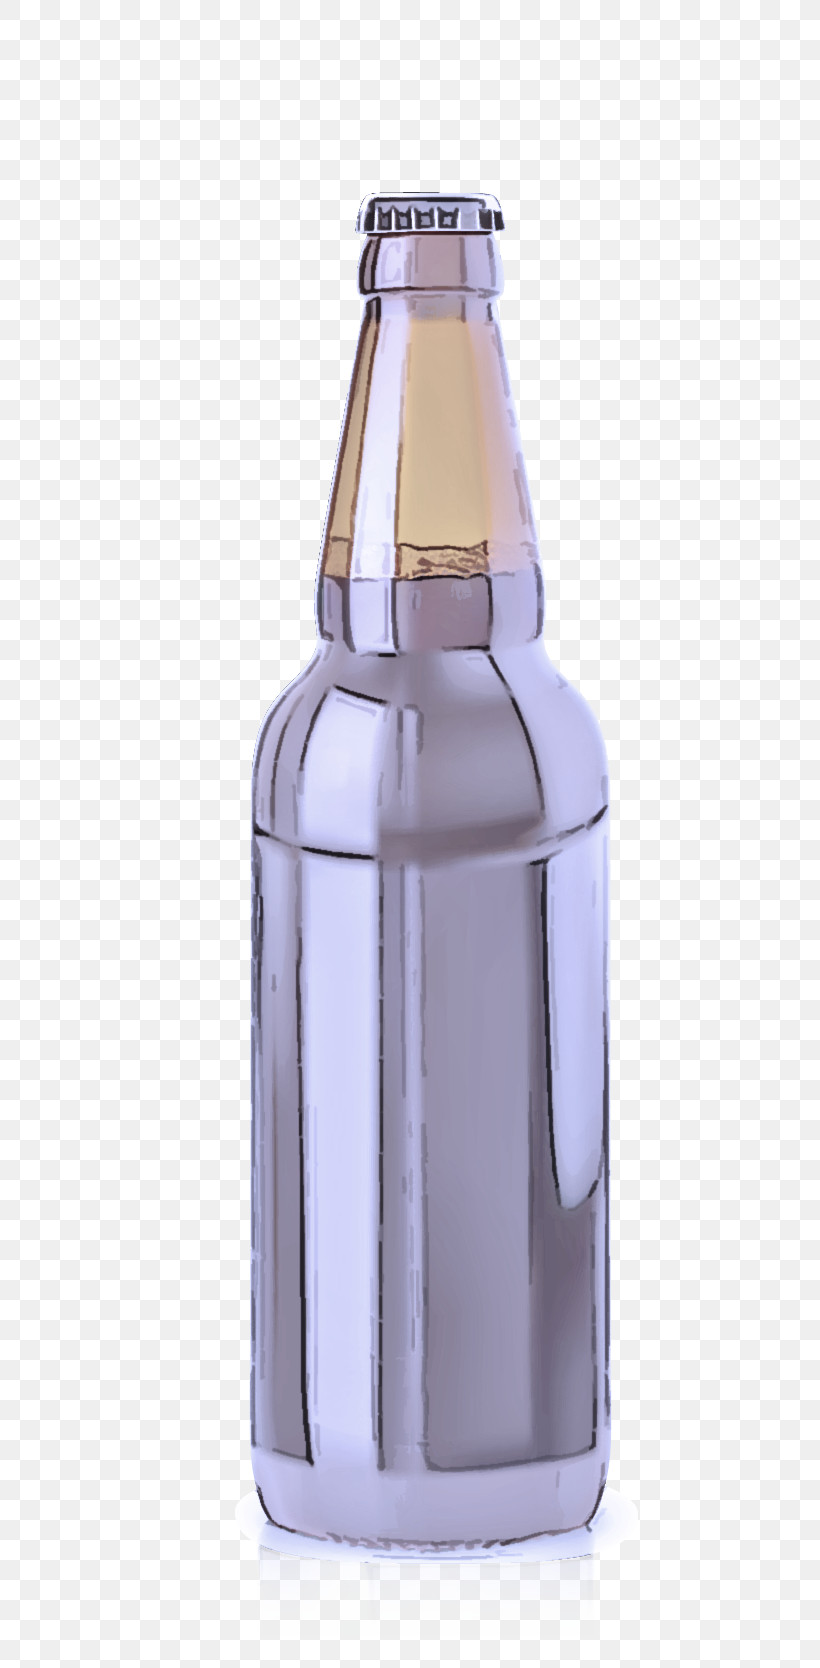 Glass Bottle Beer Bottle Glass Bottle Purple, PNG, 631x1668px, Glass Bottle, Beer Bottle, Bottle, Glass, Liquidm Inc Download Free